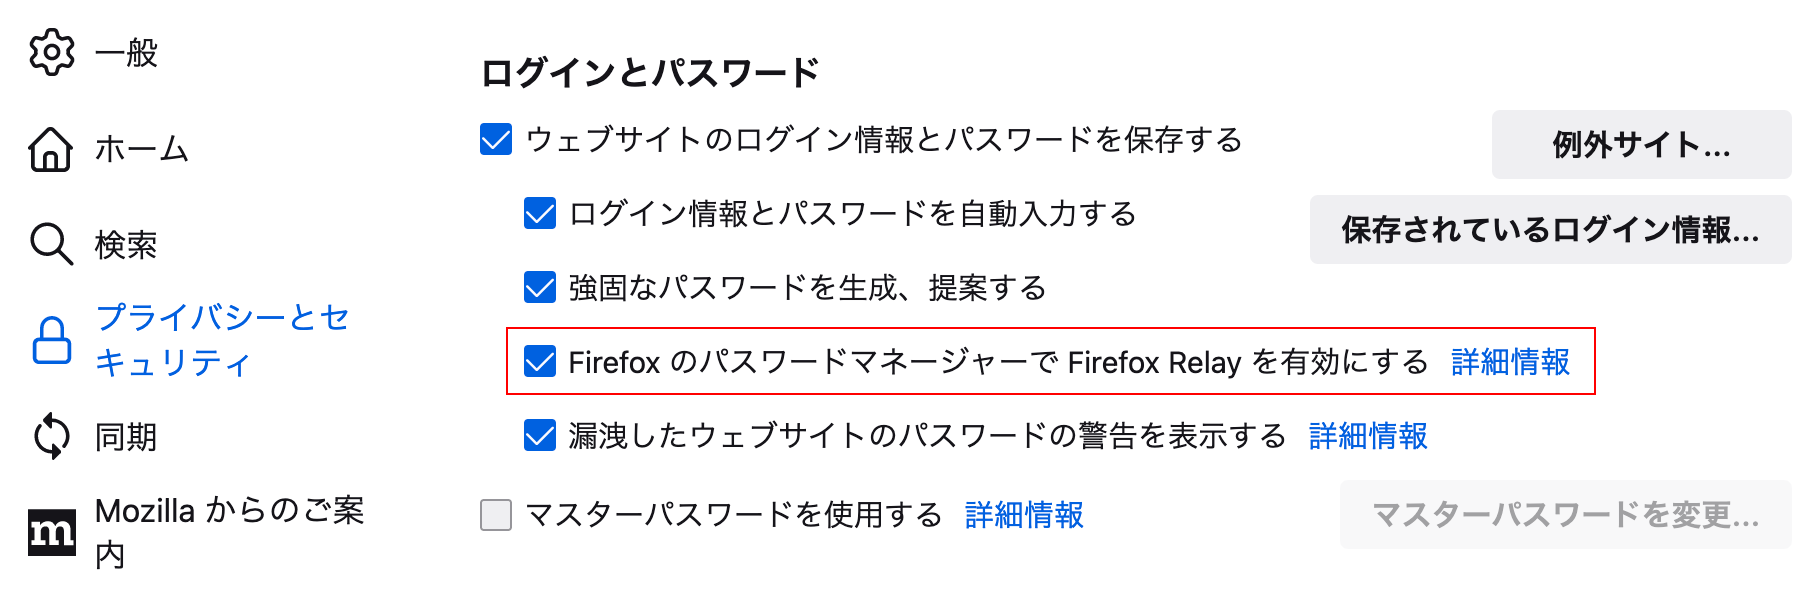 FirefoxのパスワードマネージャーでFirefox Relayを有効にする